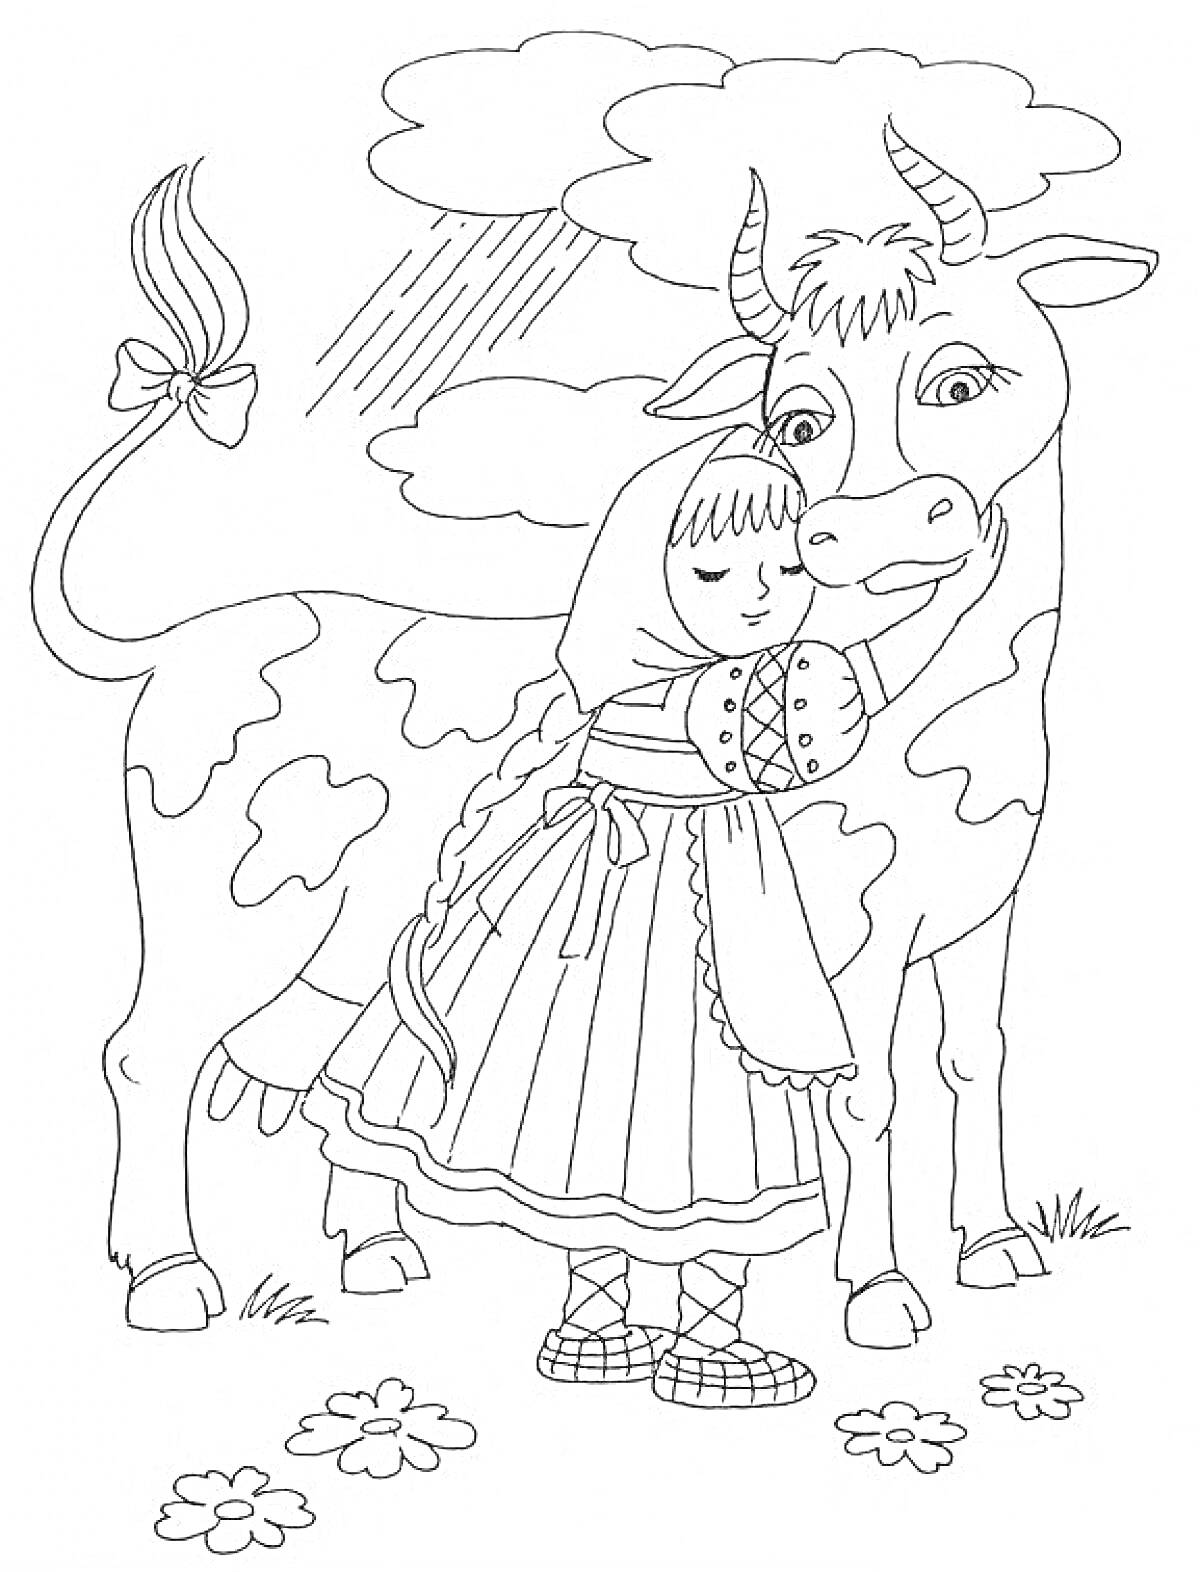 Девочка в платочке обнимает корову, на фоне облака и солнышко, на траве стоят цветы